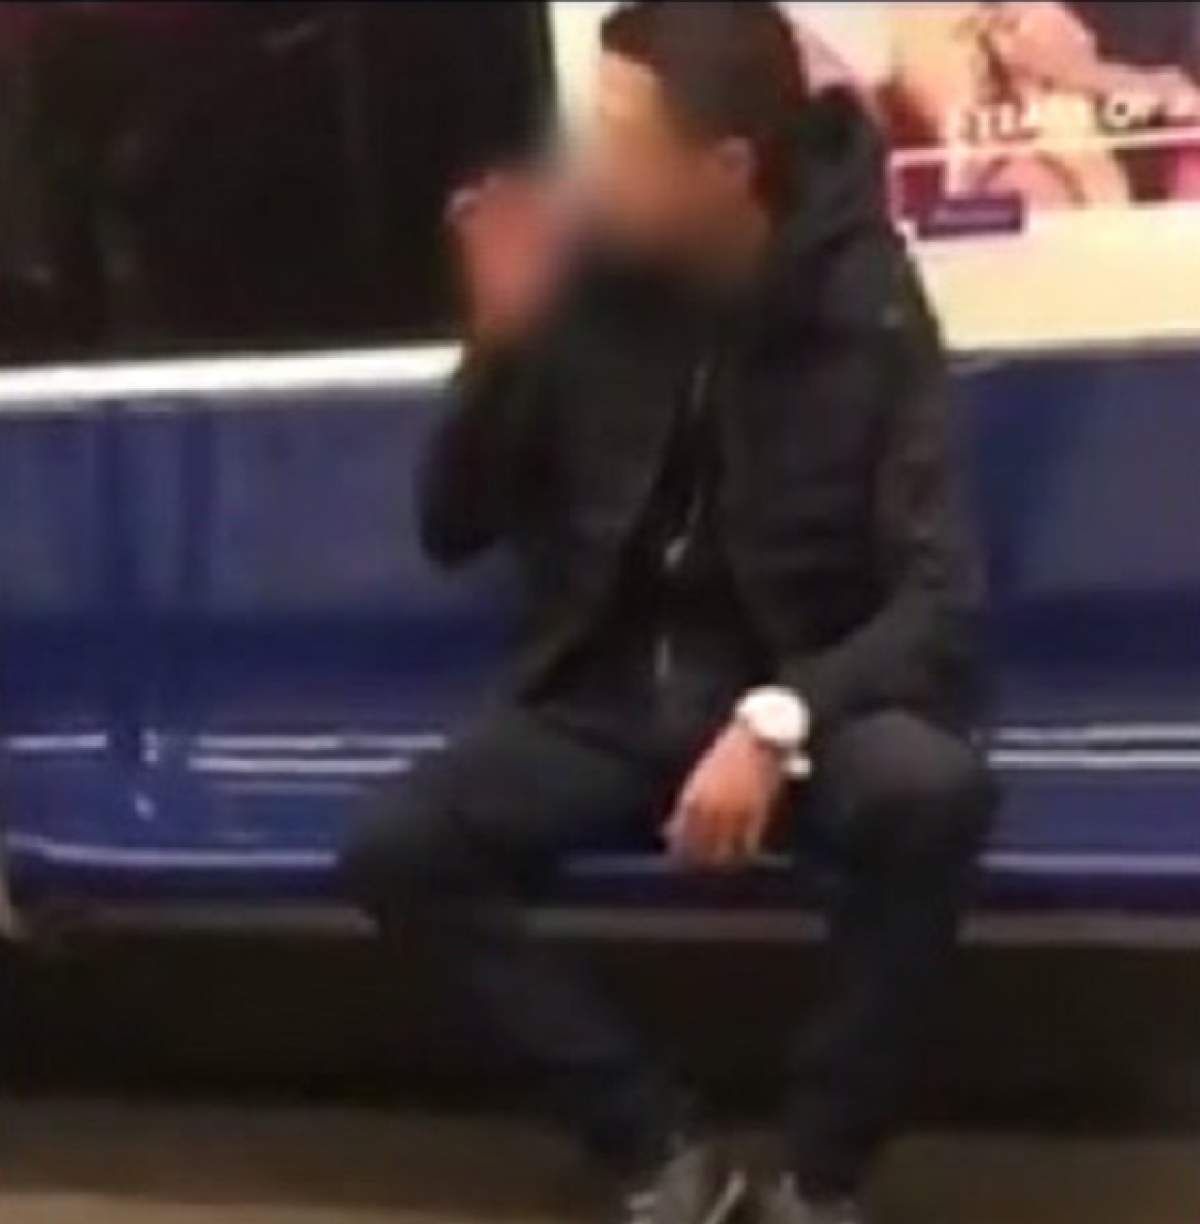 VIDEO / S-a întâmplat azi în Bucureşti! Şi-a aprins o ţigară chiar în metrou şi i-a înjurat pe ceilalţi călători care i-au atras atenţia